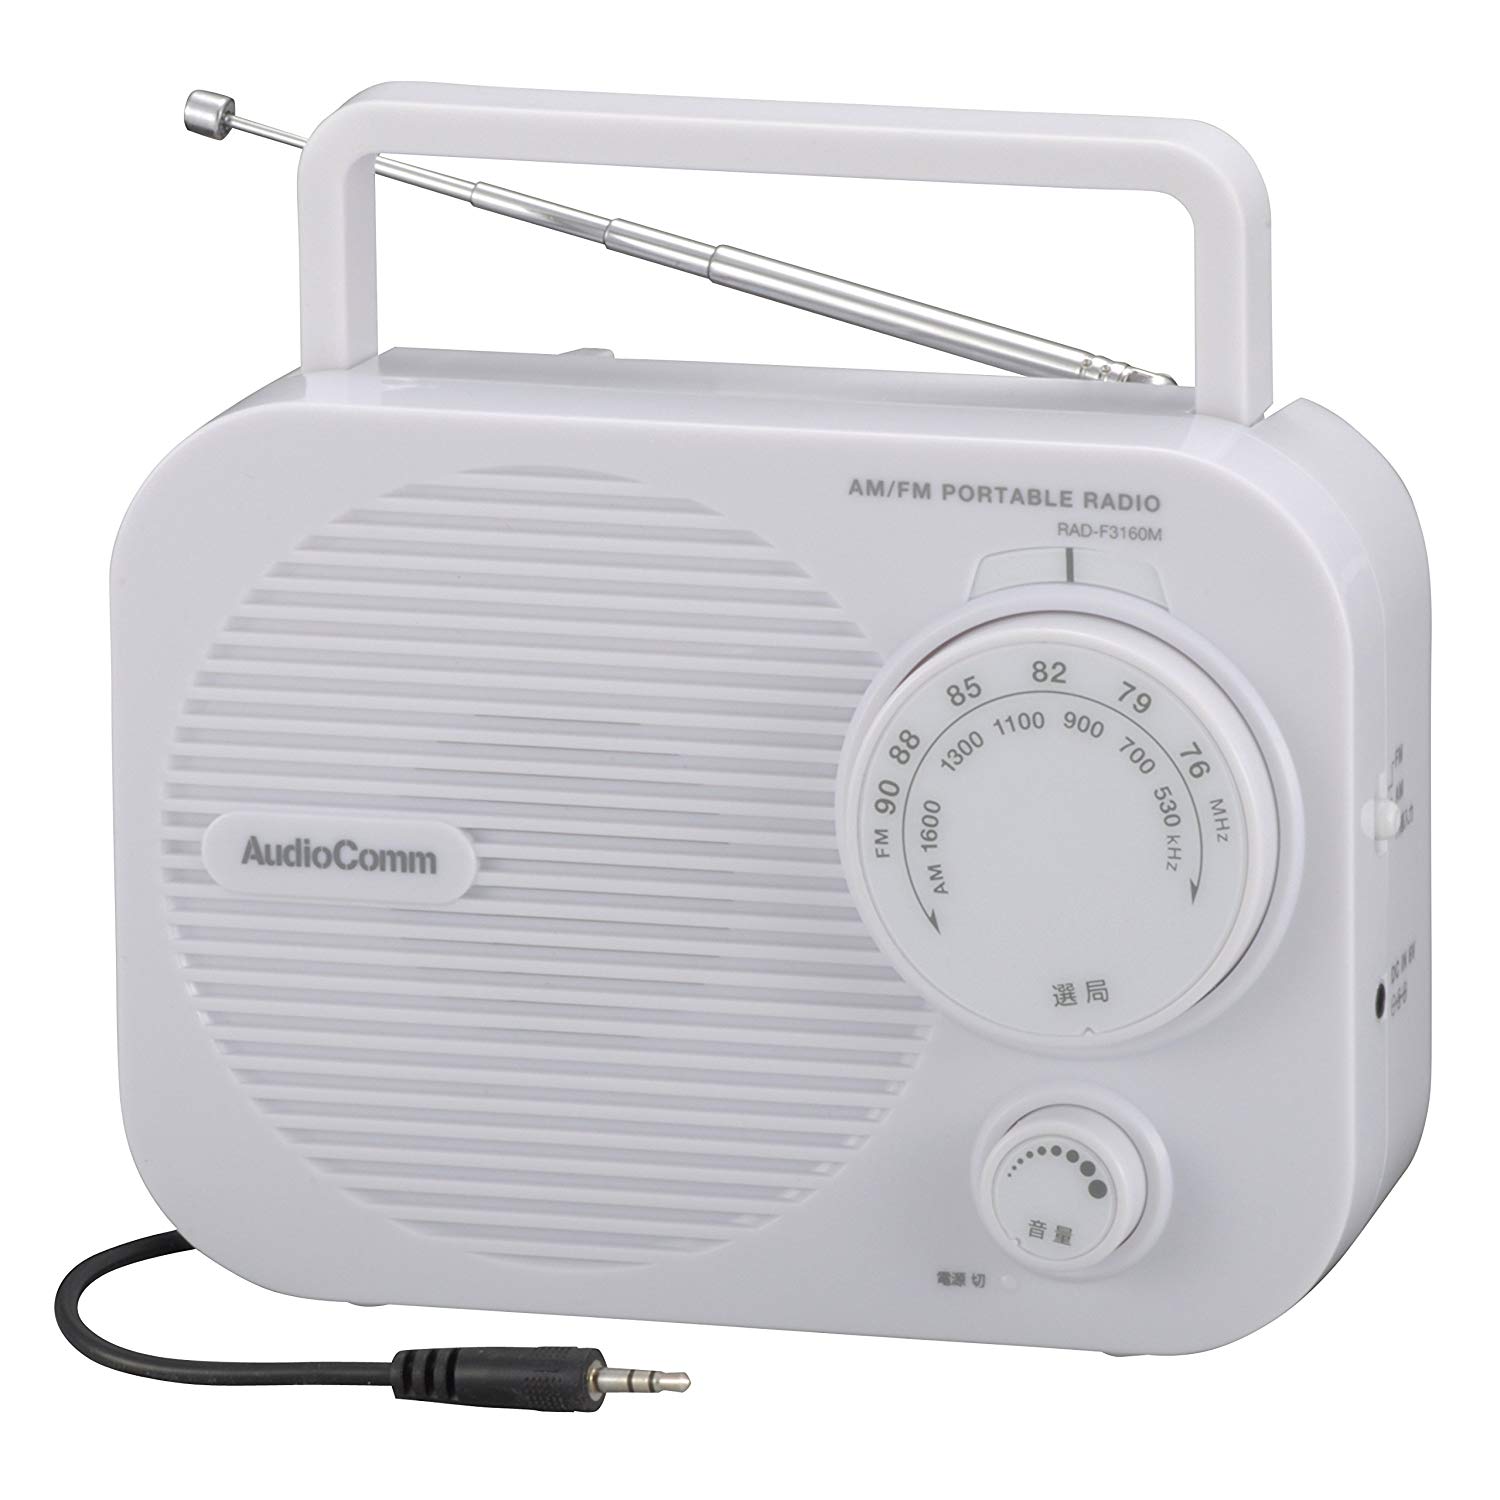 【あす楽】AM/FM ポータブル ラジオ ホワイト ミニラジオ 耳元スピーカー 乾電池式 外付け スピーカー RAD-F3160M-W